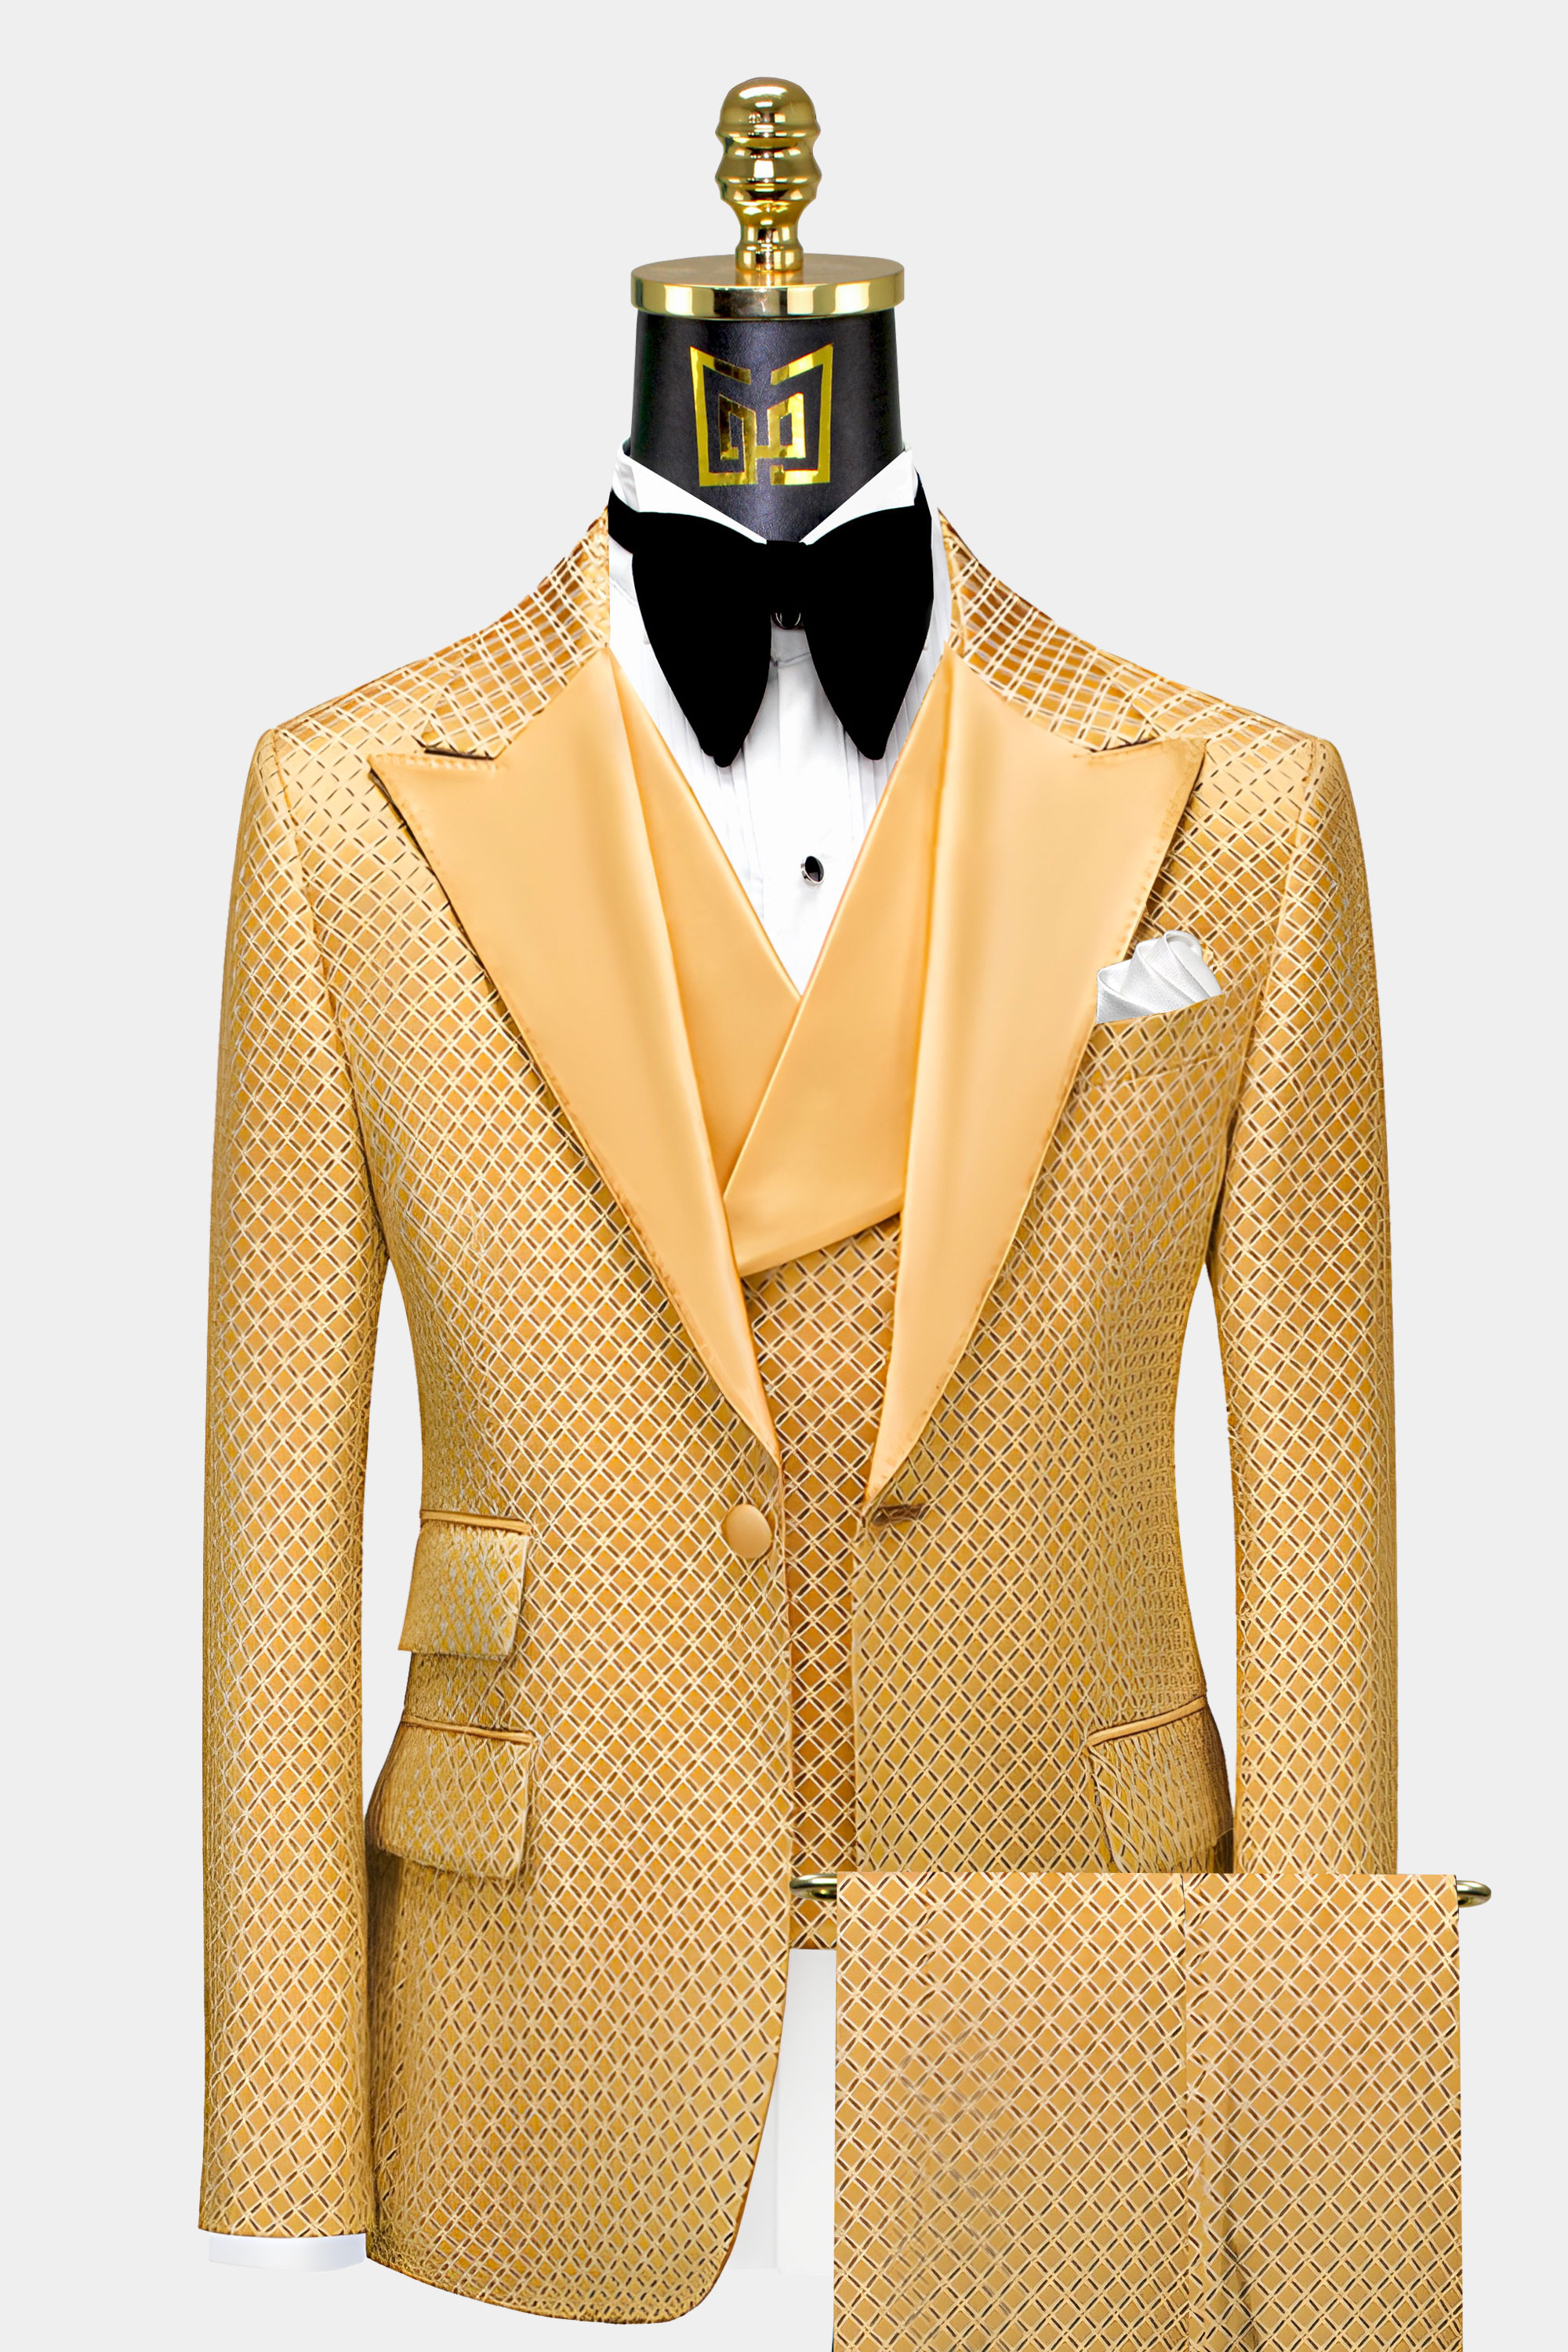 Modern Gold Checkered Tuxedo - 3 Piece